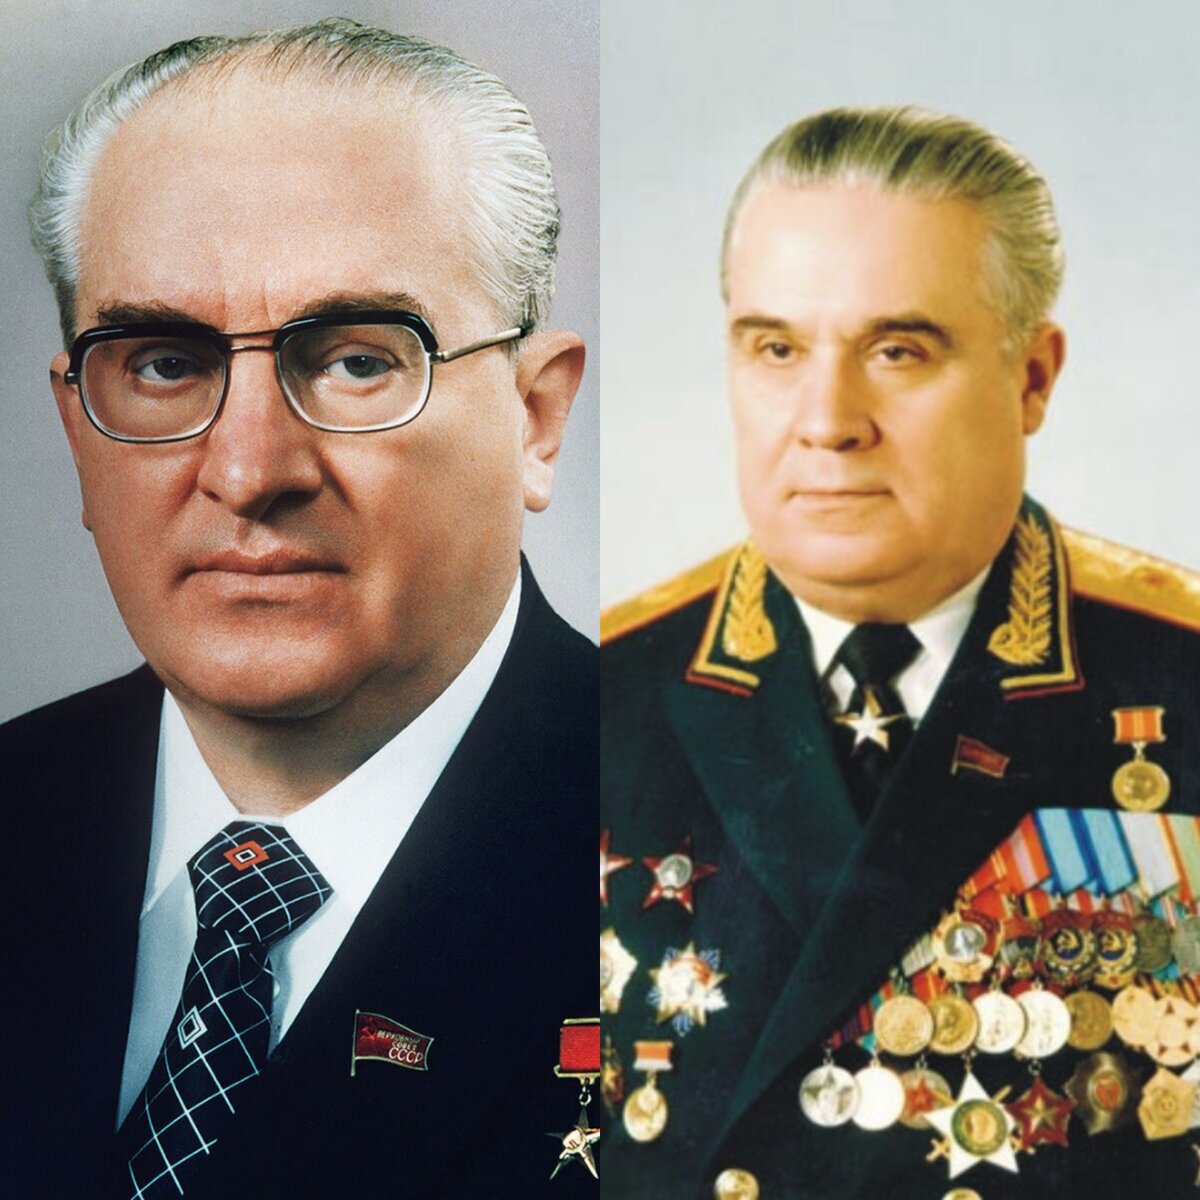 Ю.В. Андропов и В.В. Федорчук. Фото взято из открытых источников.